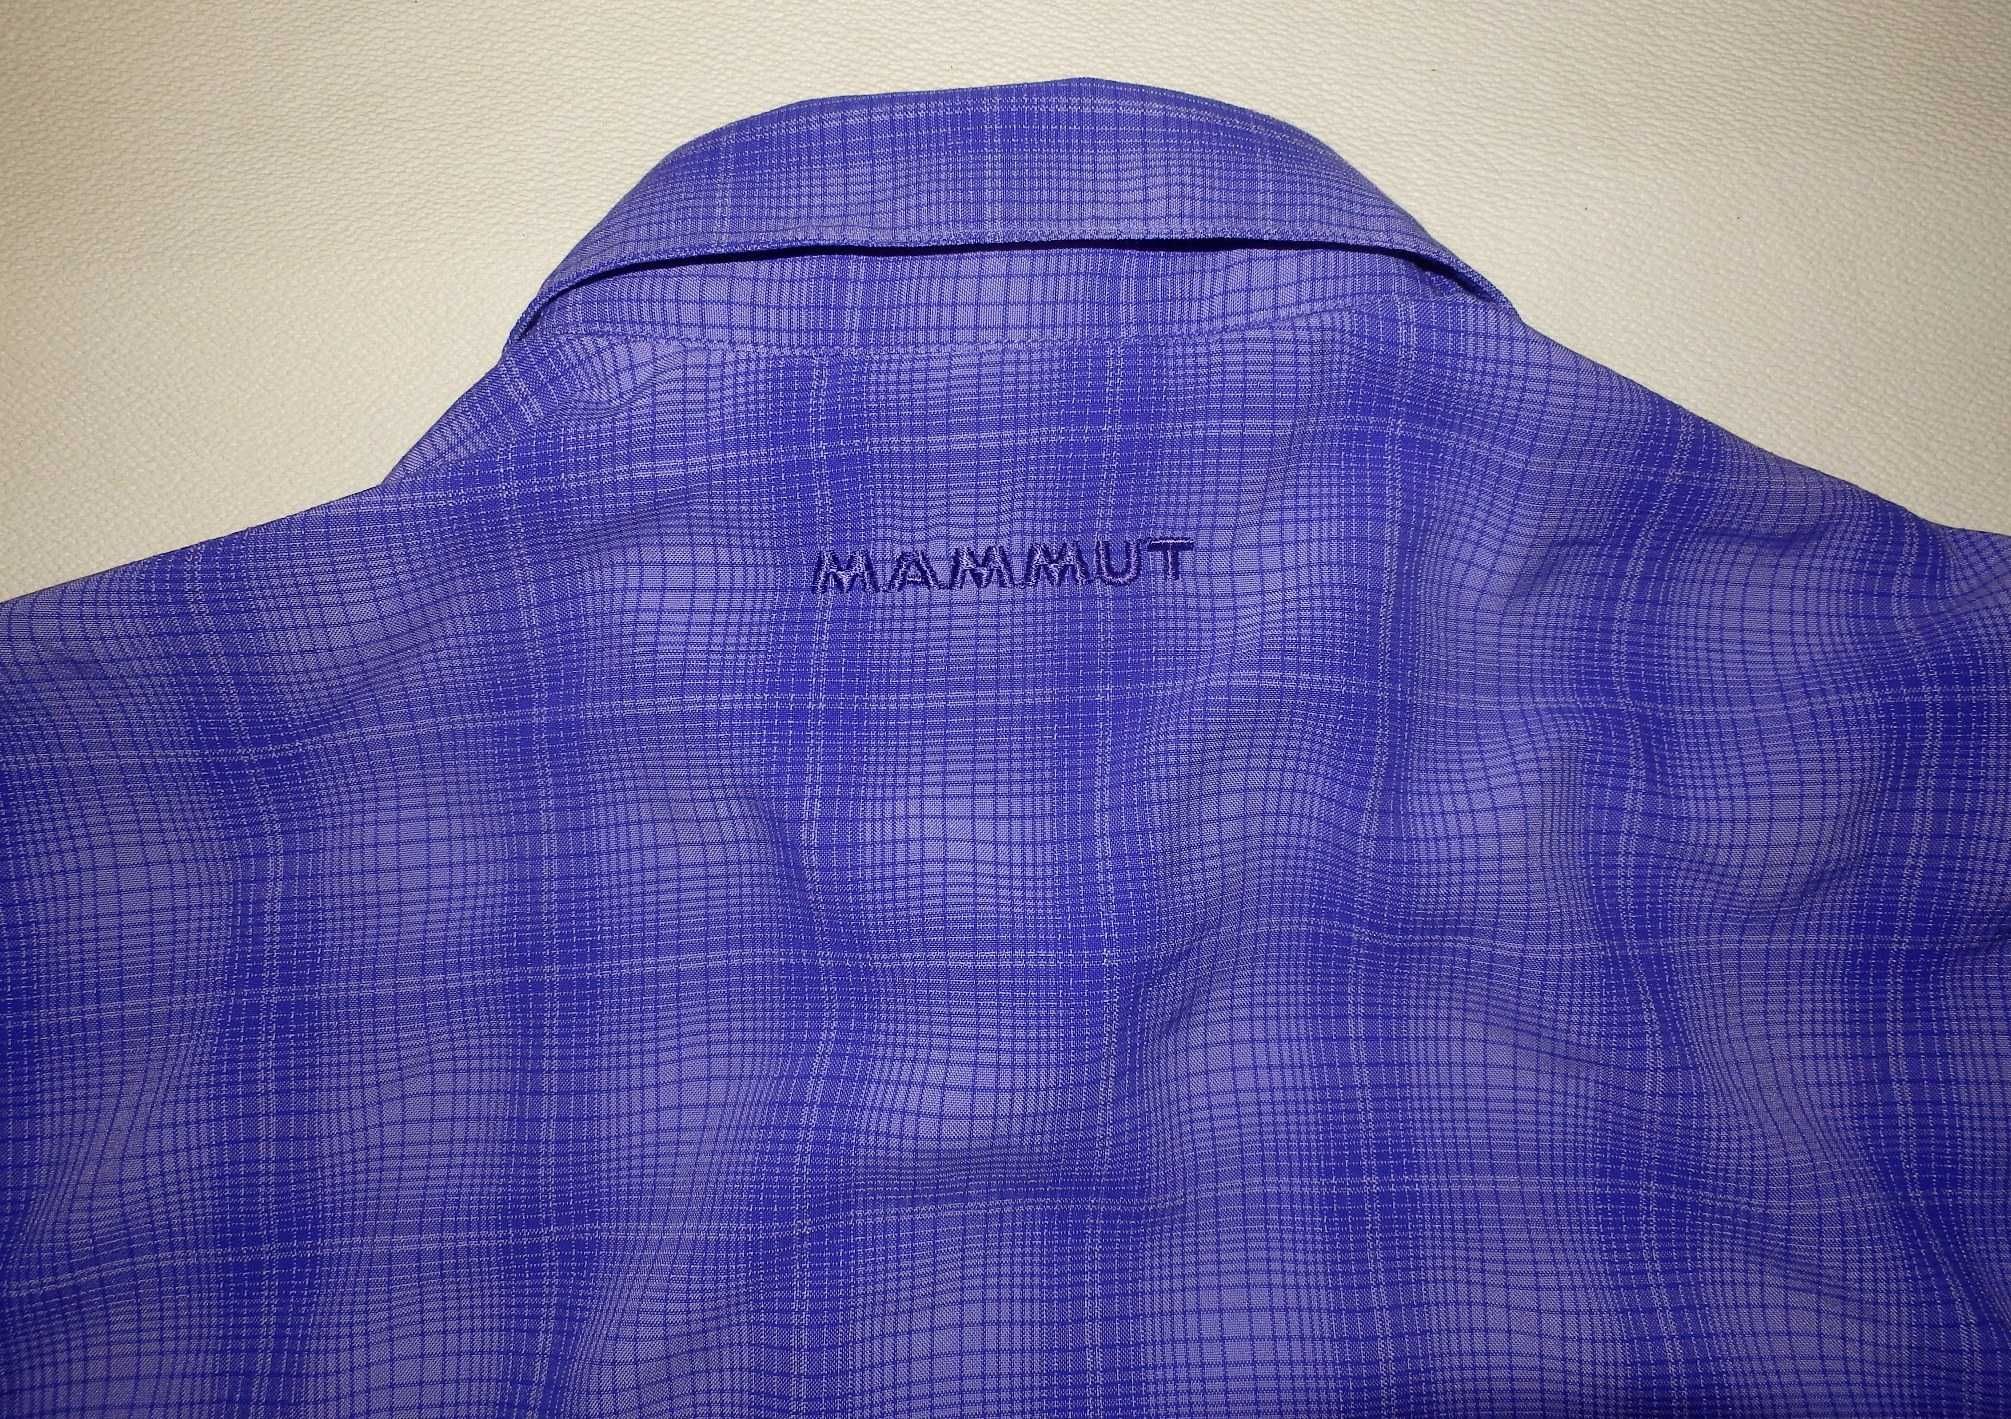 Bluza camasa MAMMUT Swiss Technology, ca noua (dama M) cod-164350